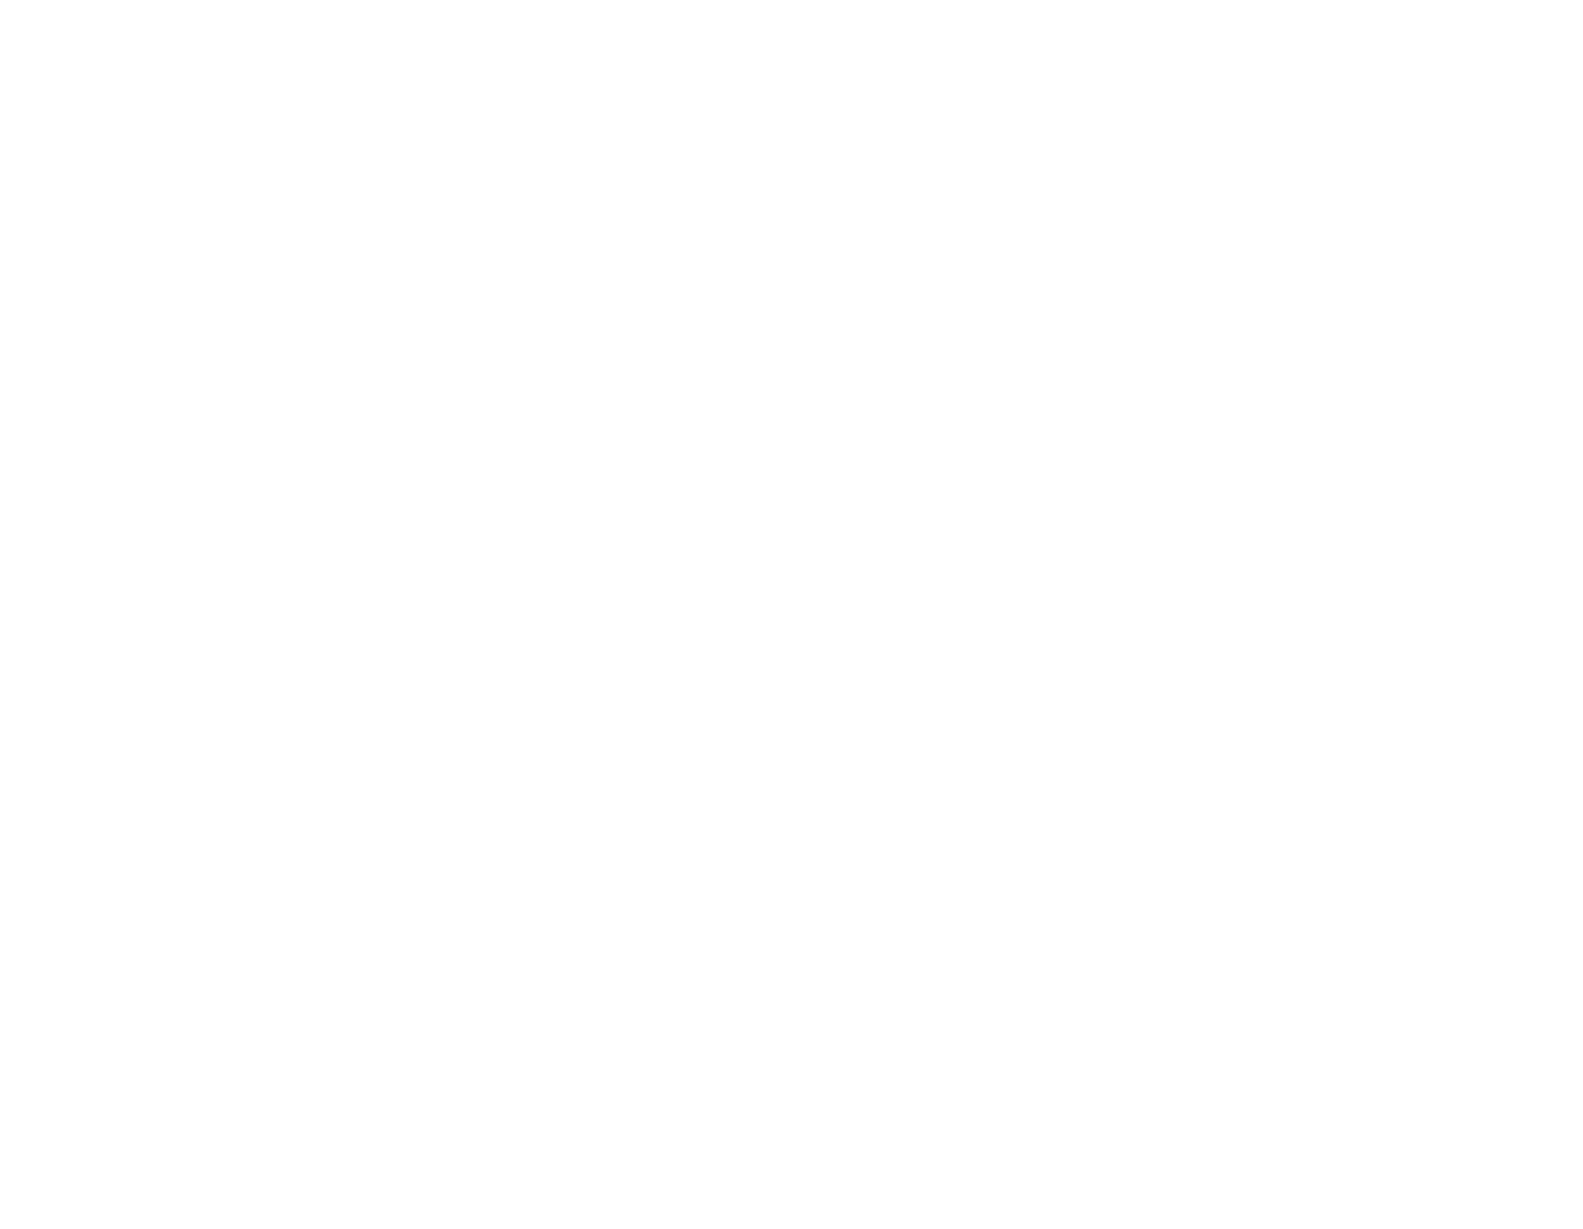 Mimecast logo for dark backgrounds (transparent PNG)